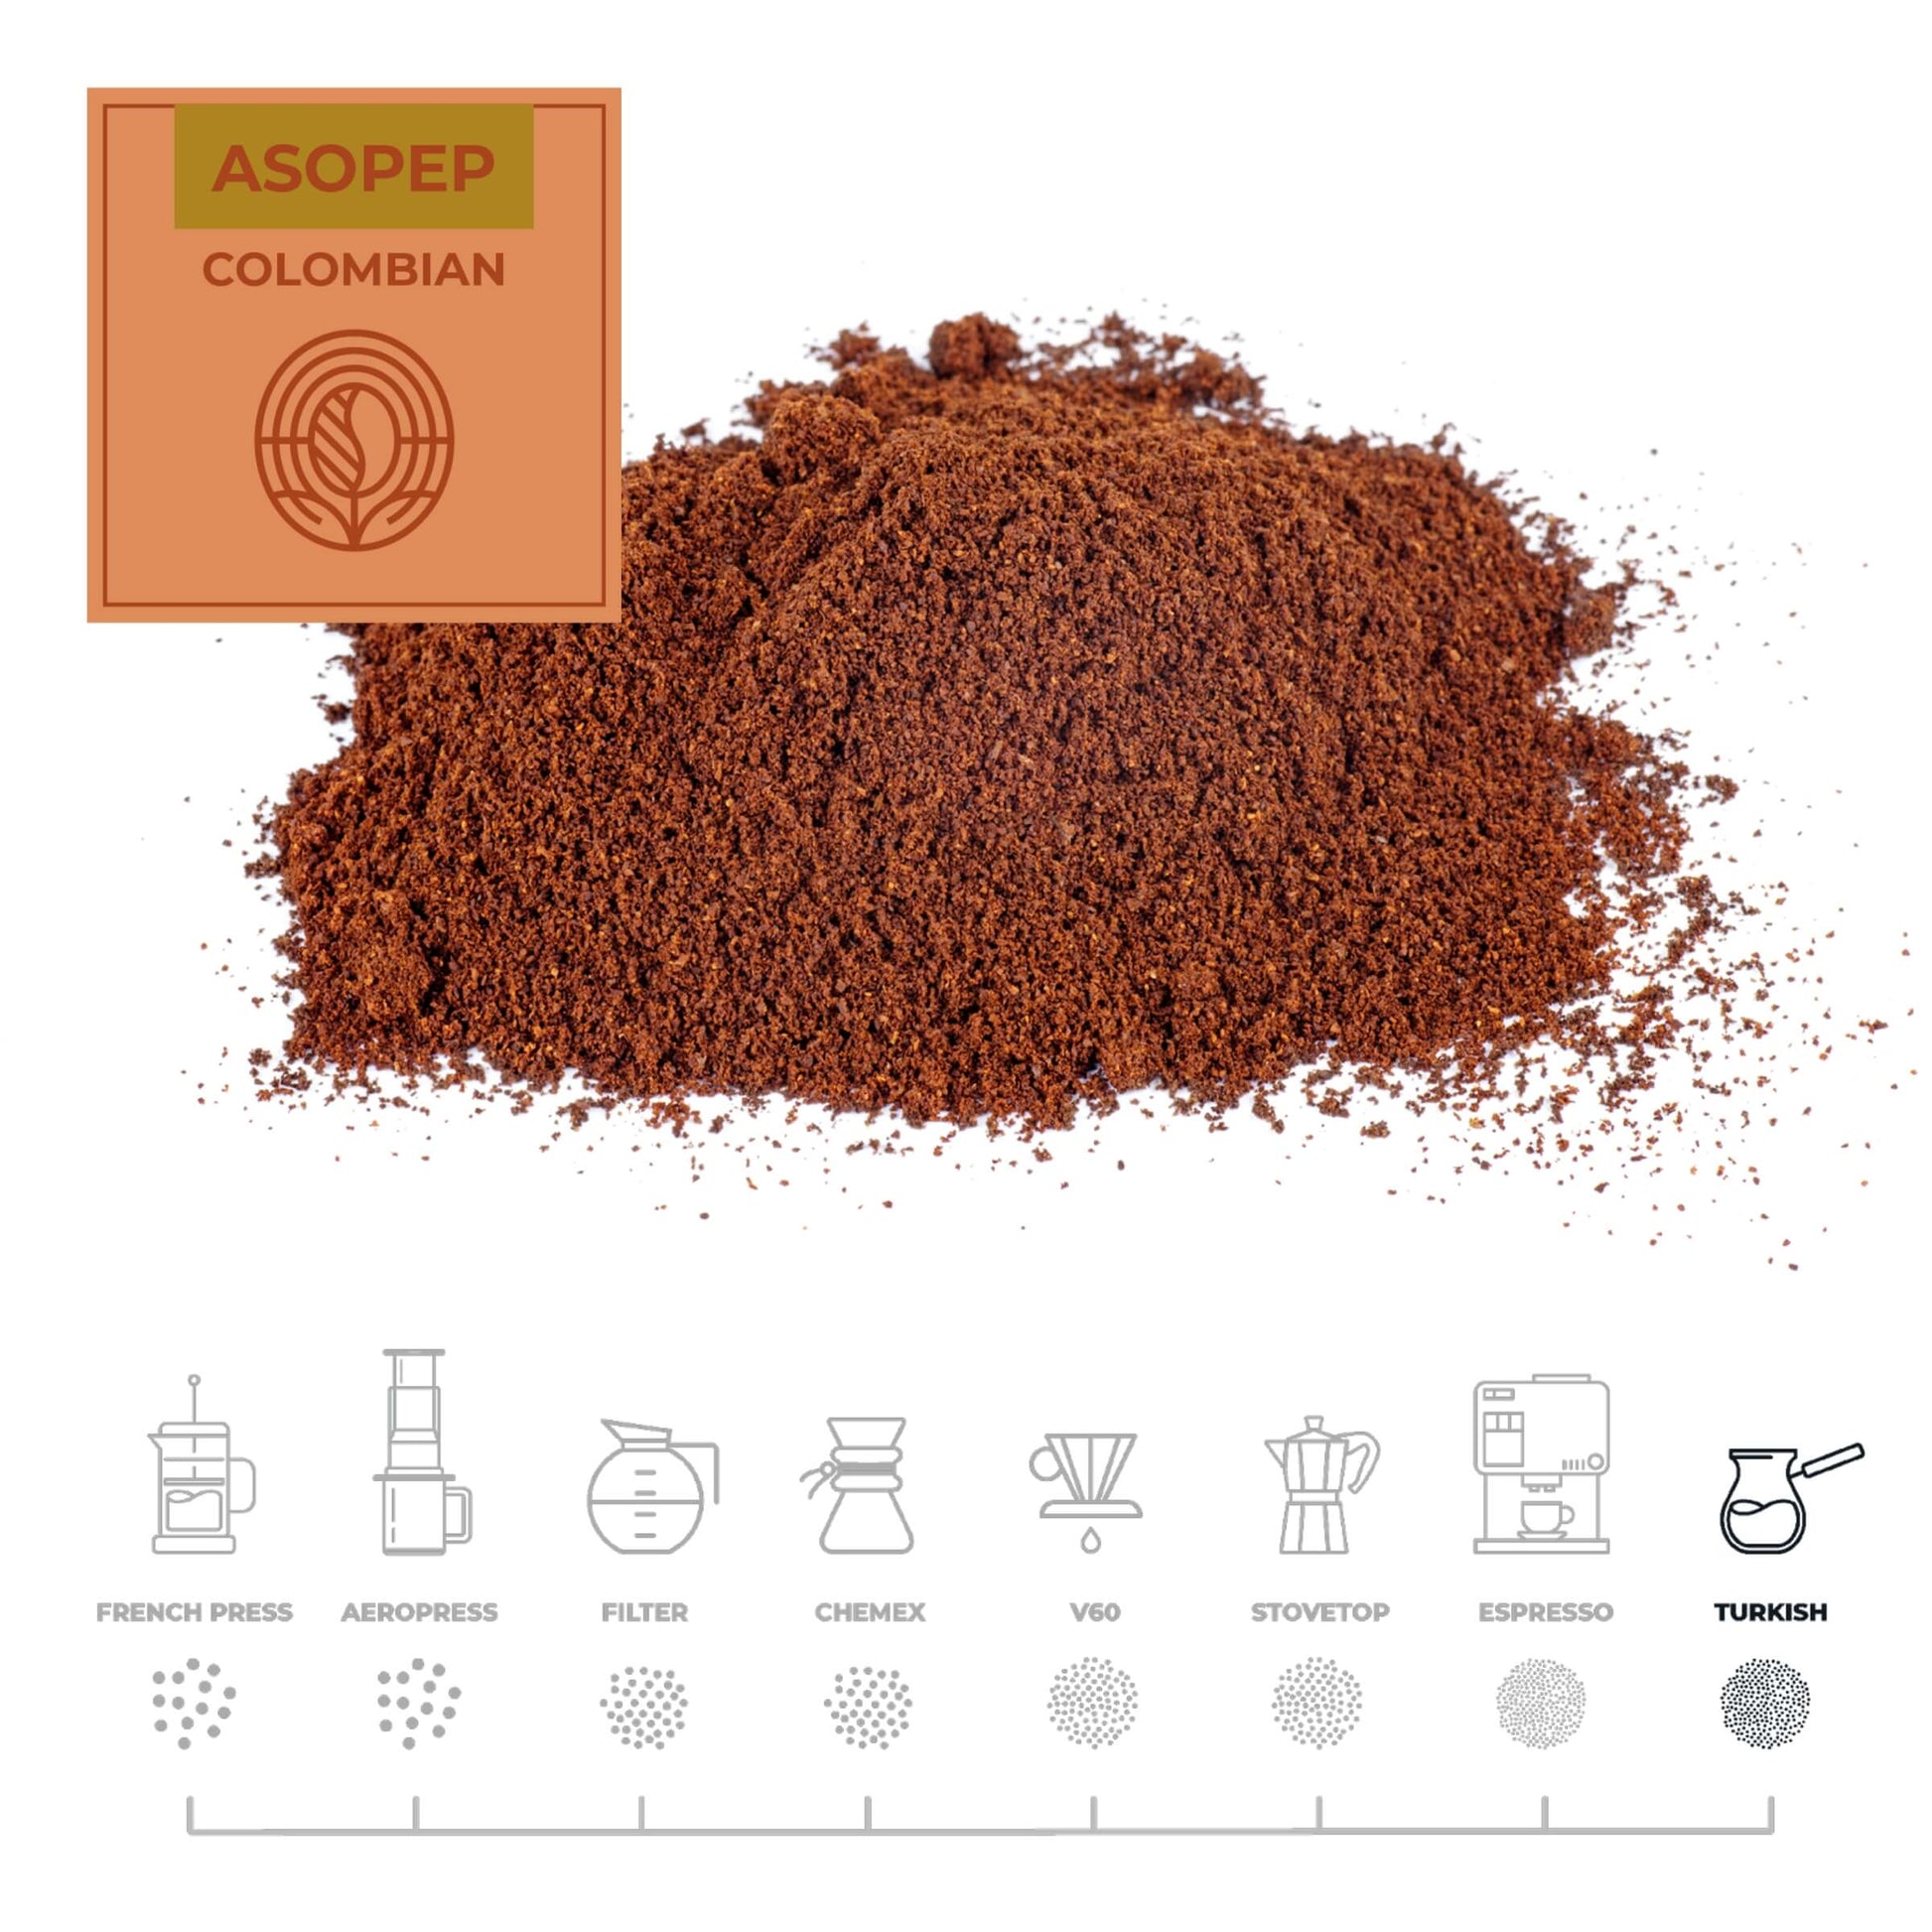 Colombian-Asopep-Coffee-Turkish_RAW-Coffee-Company